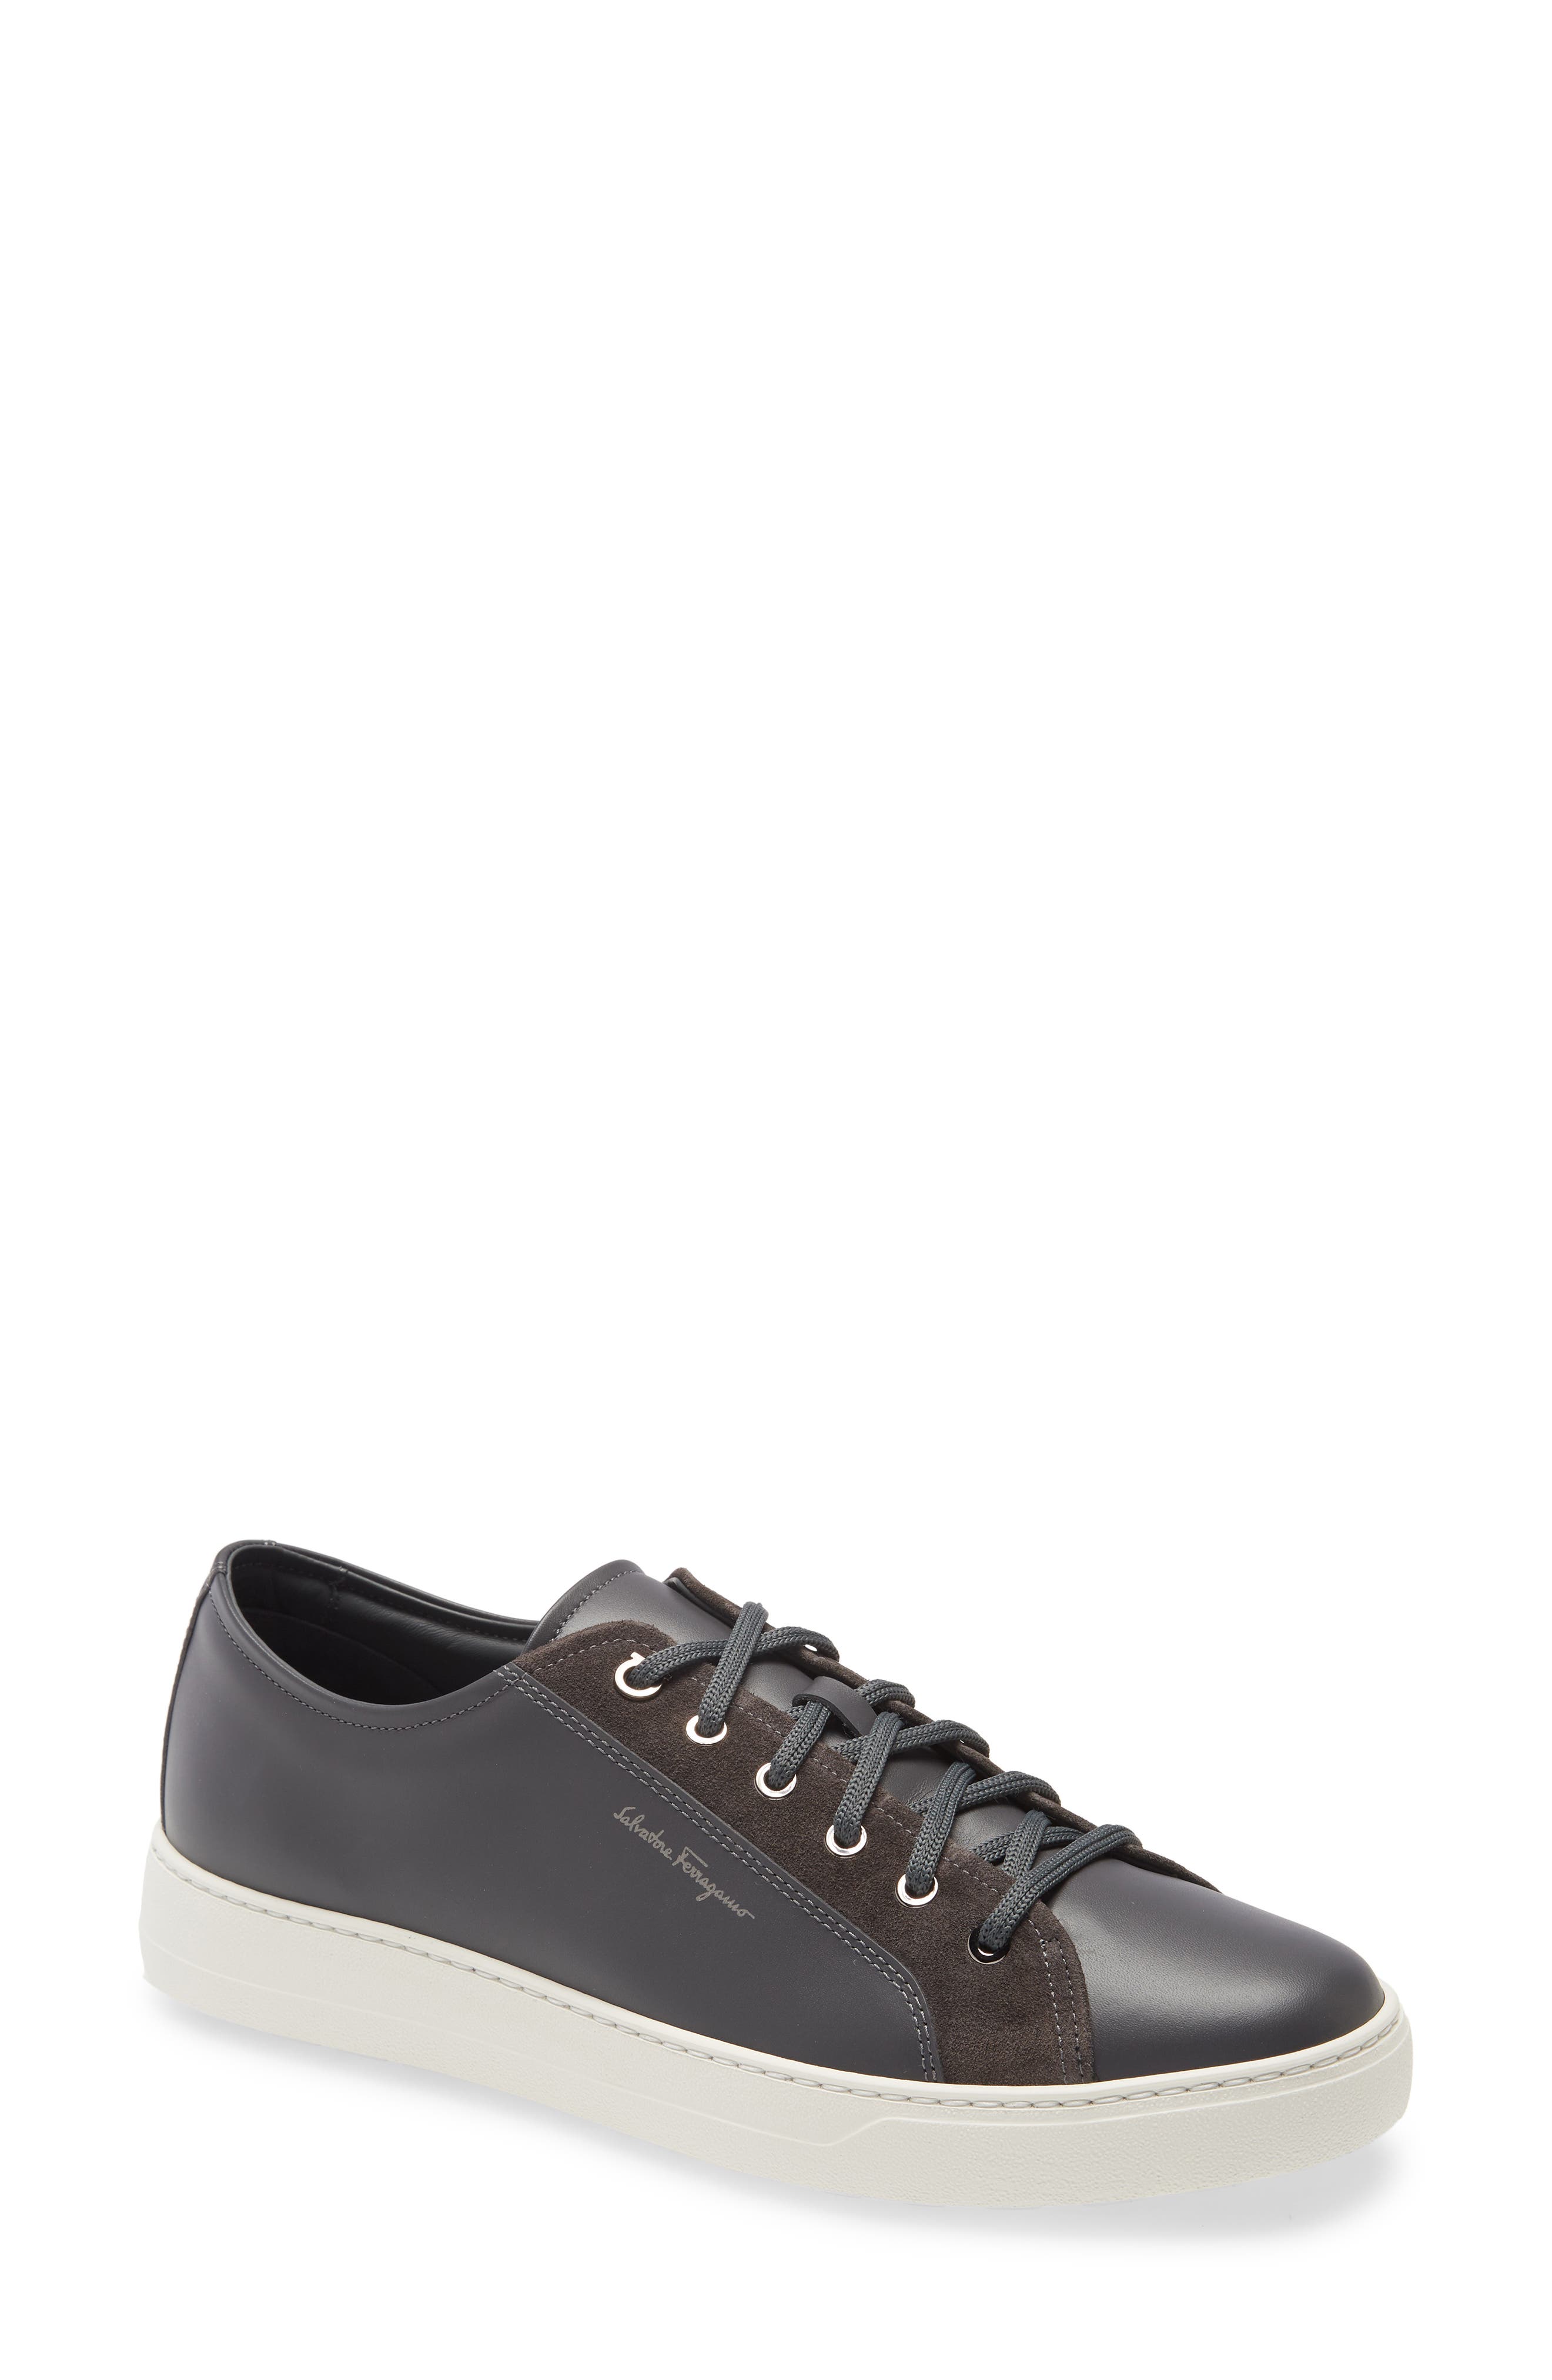 grey designer shoes